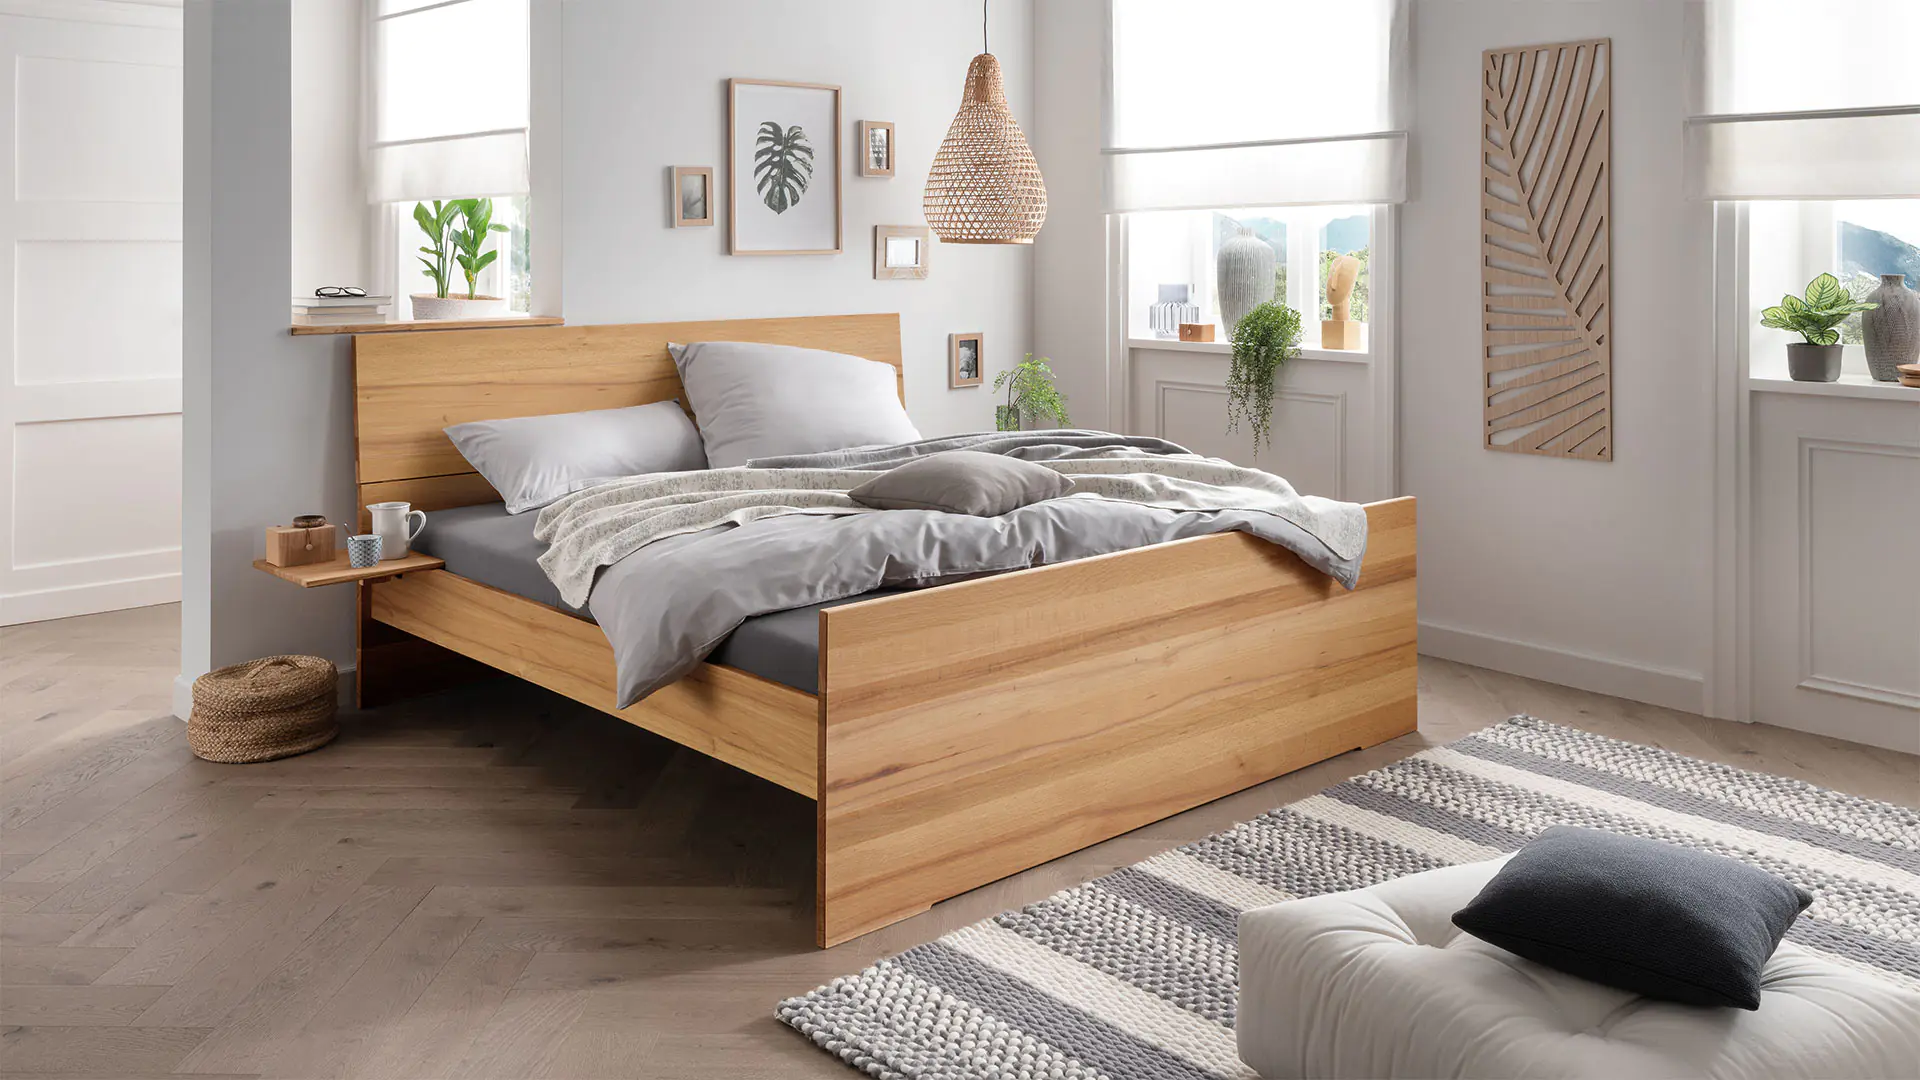 Encaja massief houten bed - elegant bed met verhoogd voeteneind, hier kernbeuken